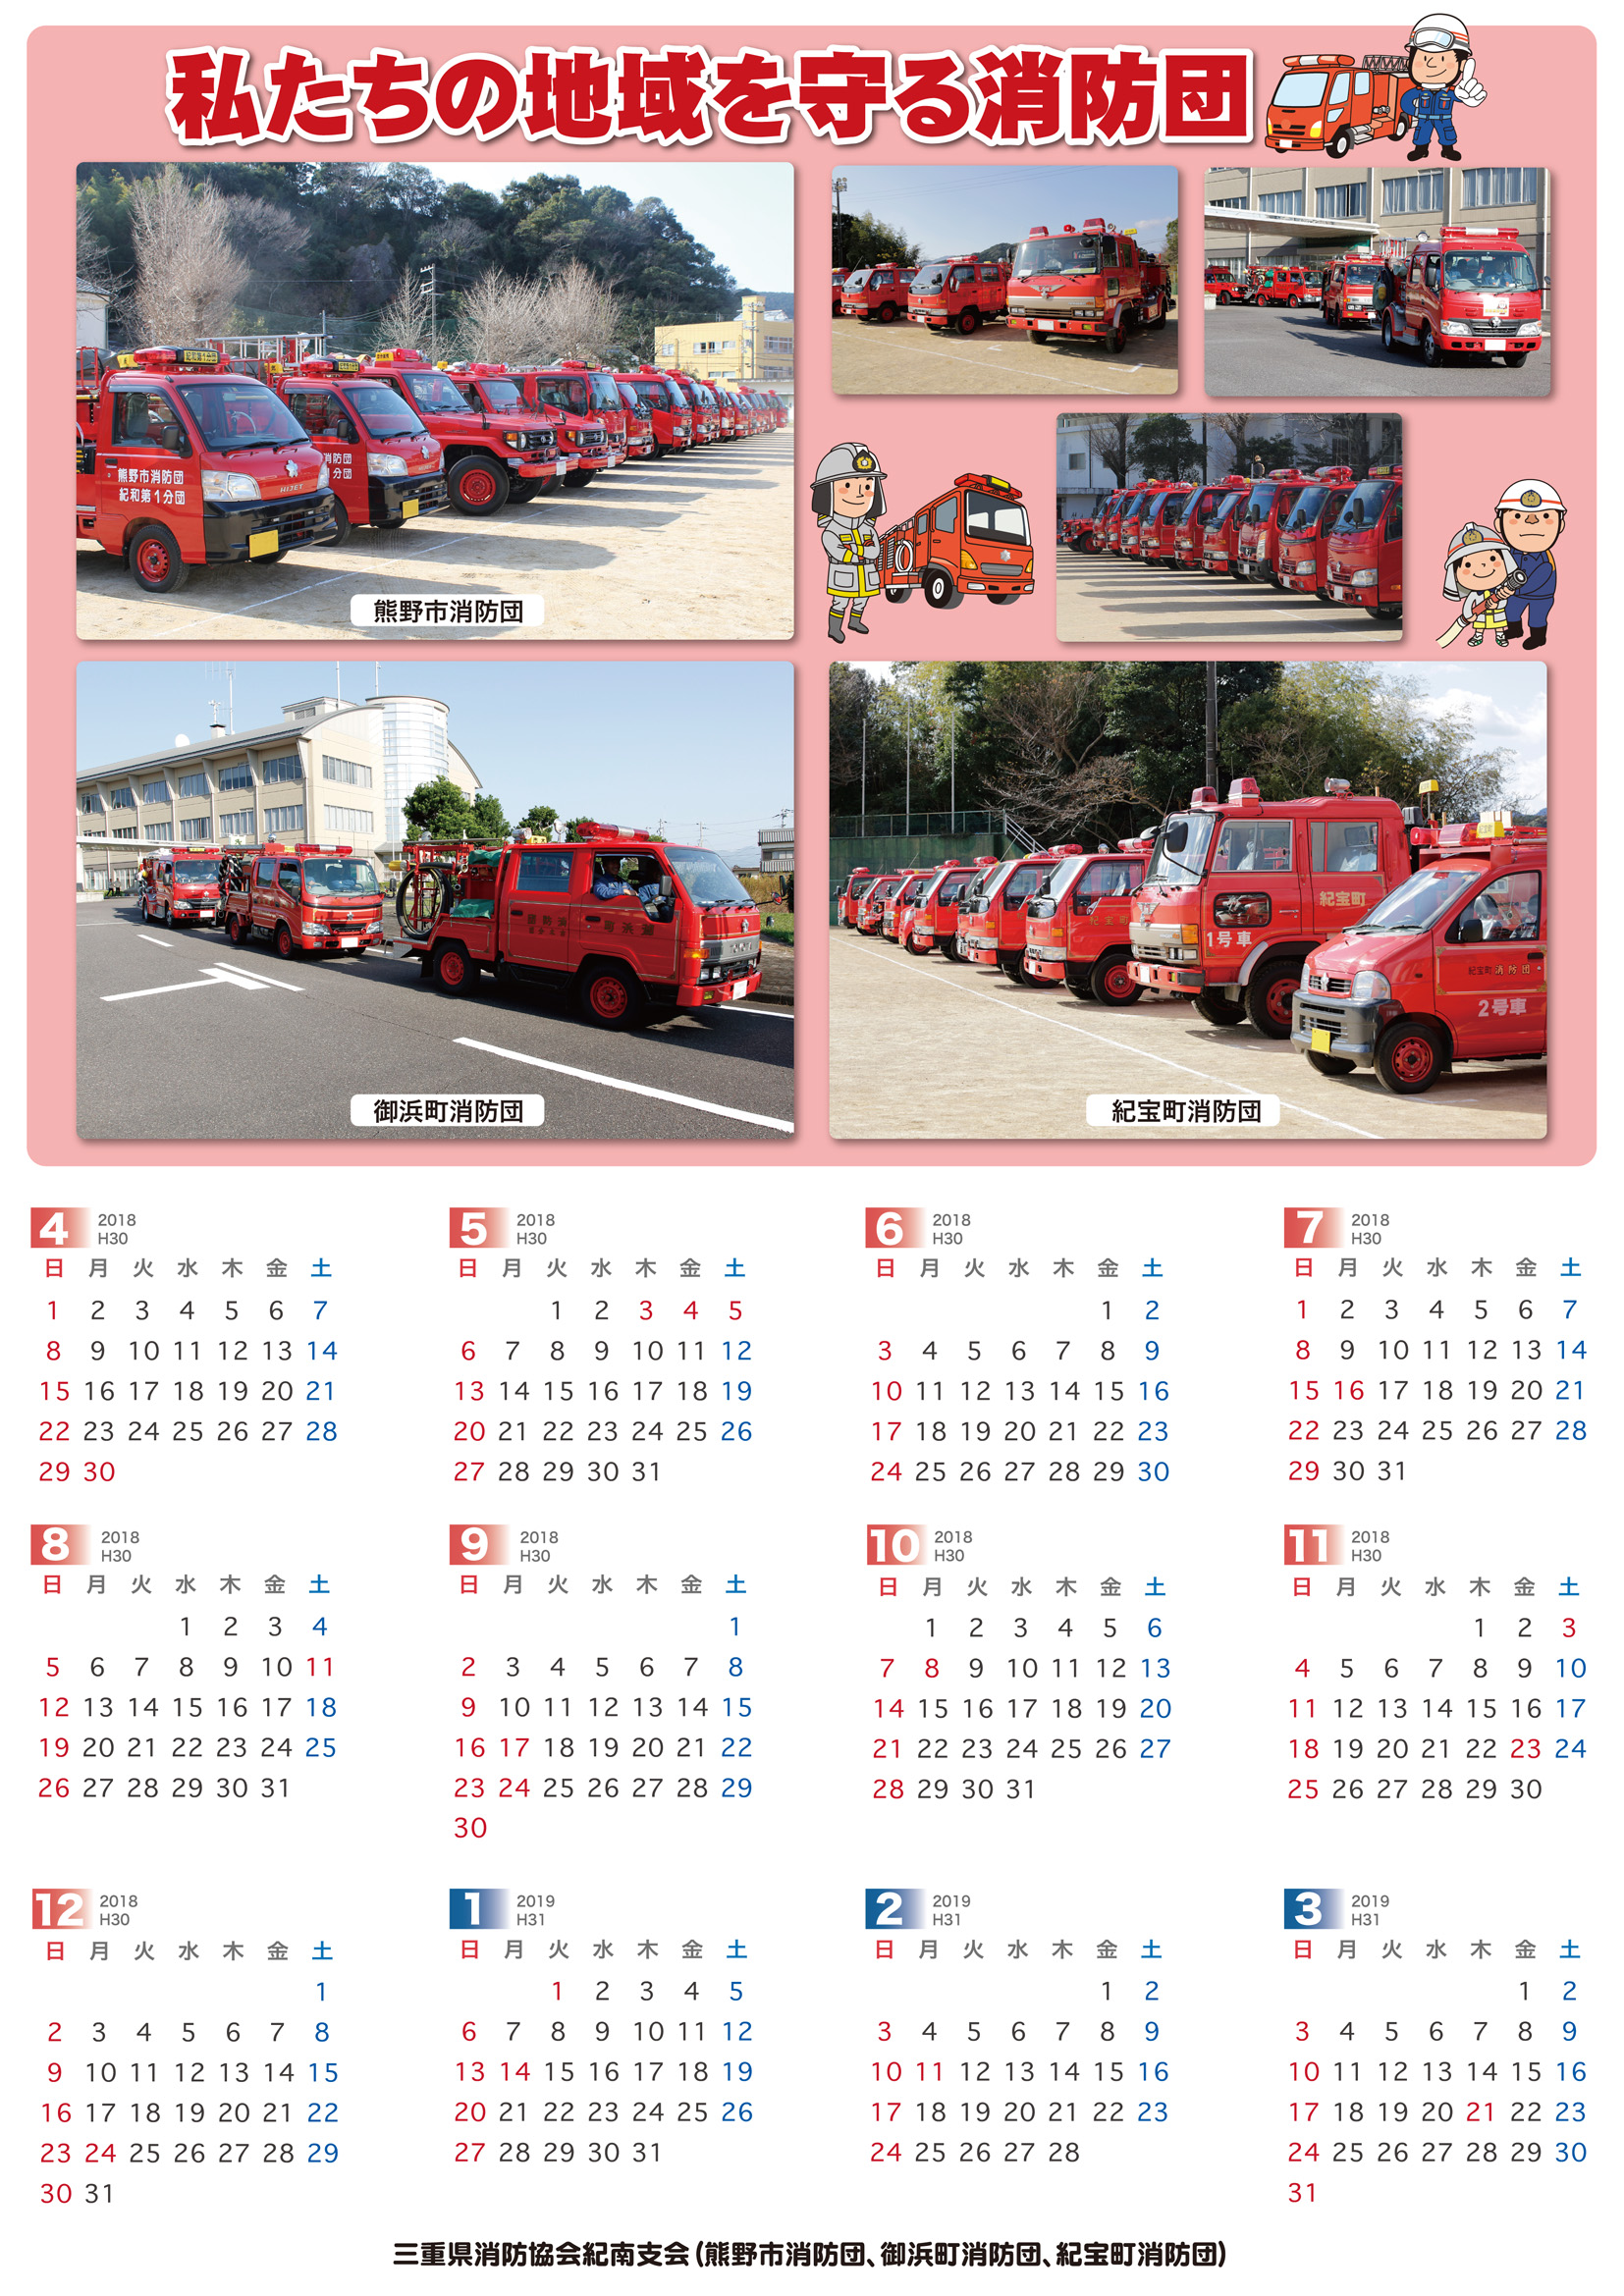 三重県 消防 救急 消防車の写真を活用した消防団カレンダーを作成しました